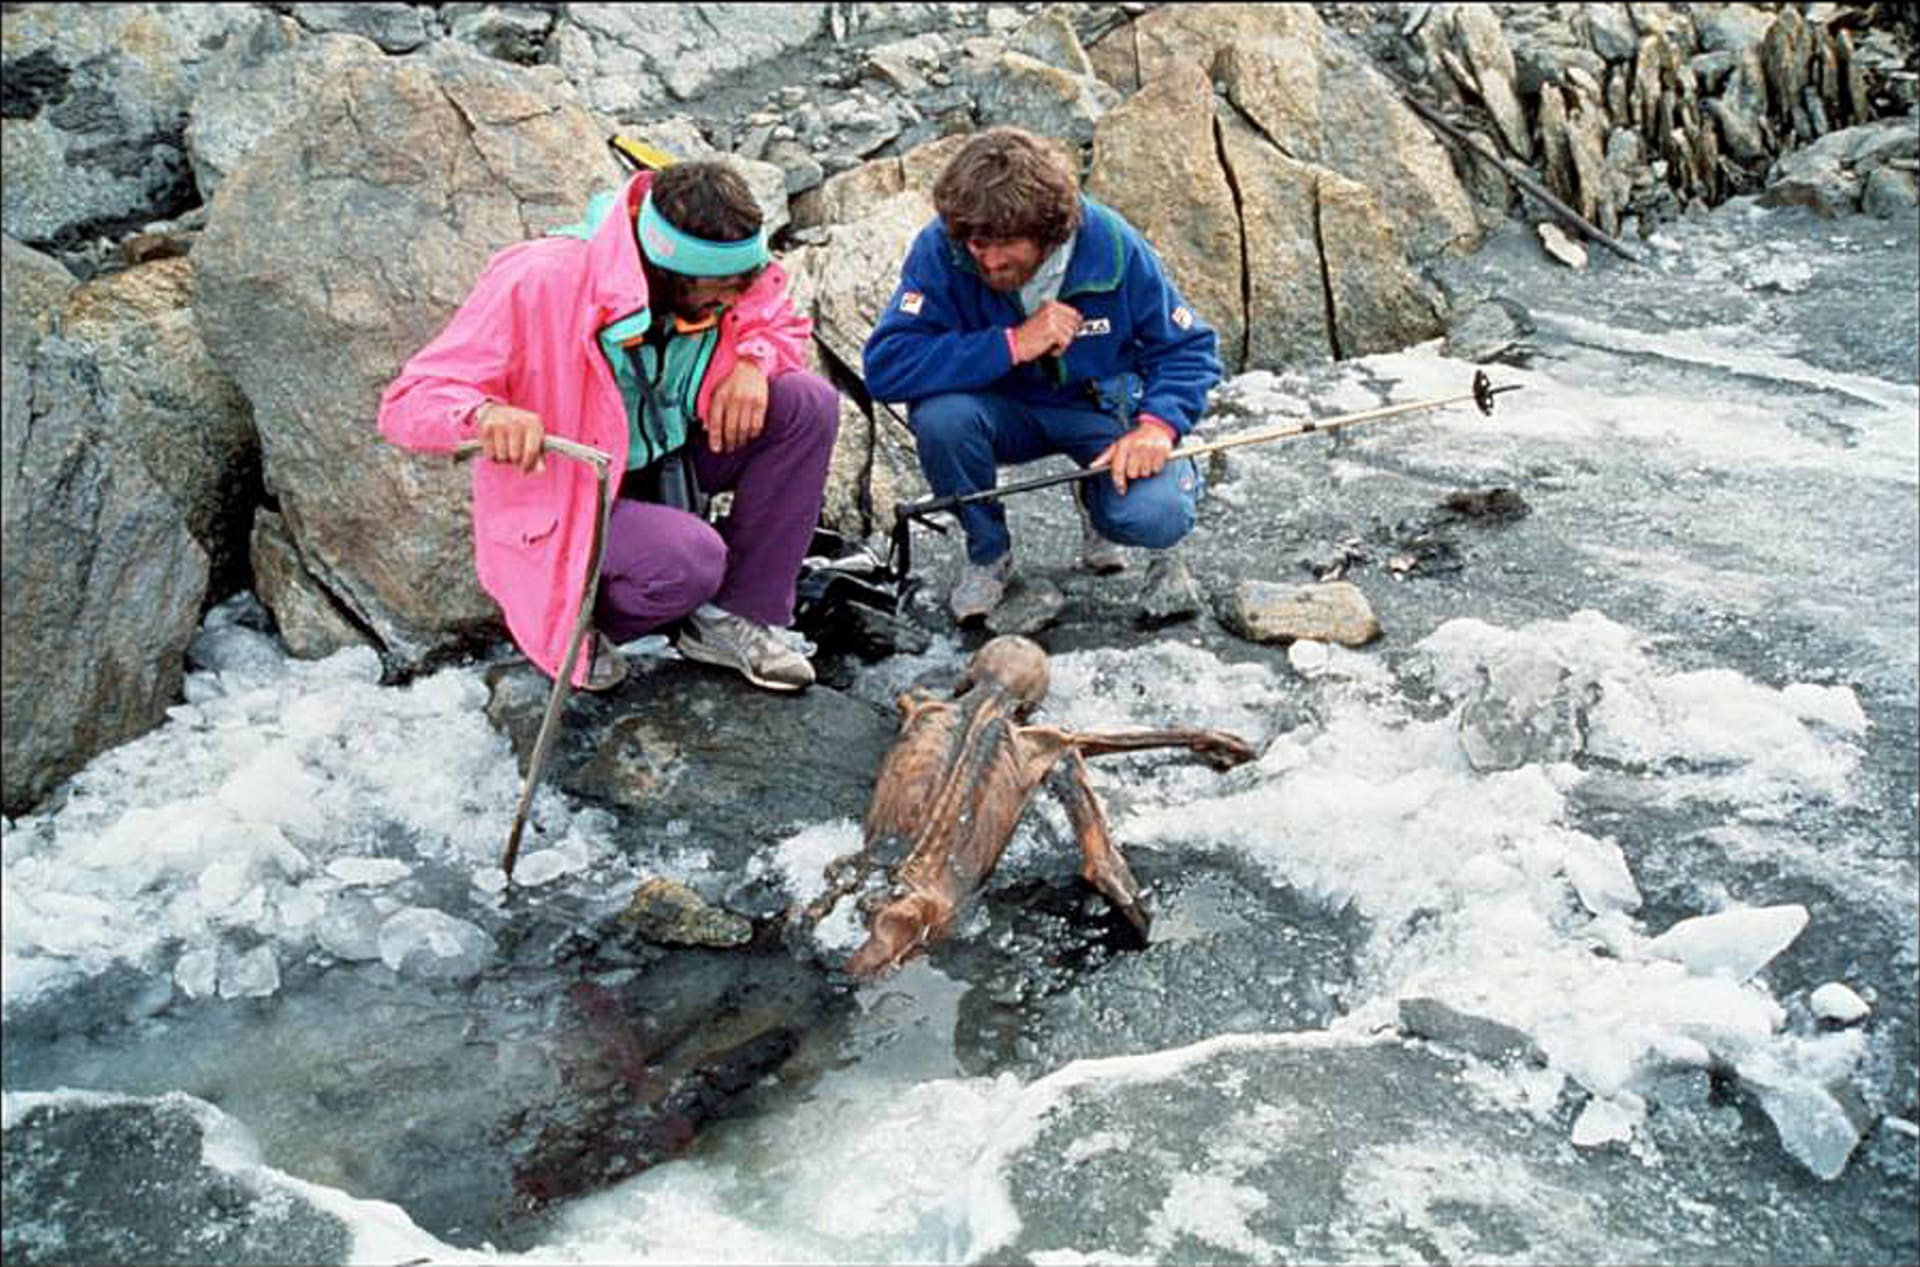 Horolezci Hans Kammerlander a Reinhold Messner si prohlížejí mumii ledového muže jen dva dny poté, co byla objevena.